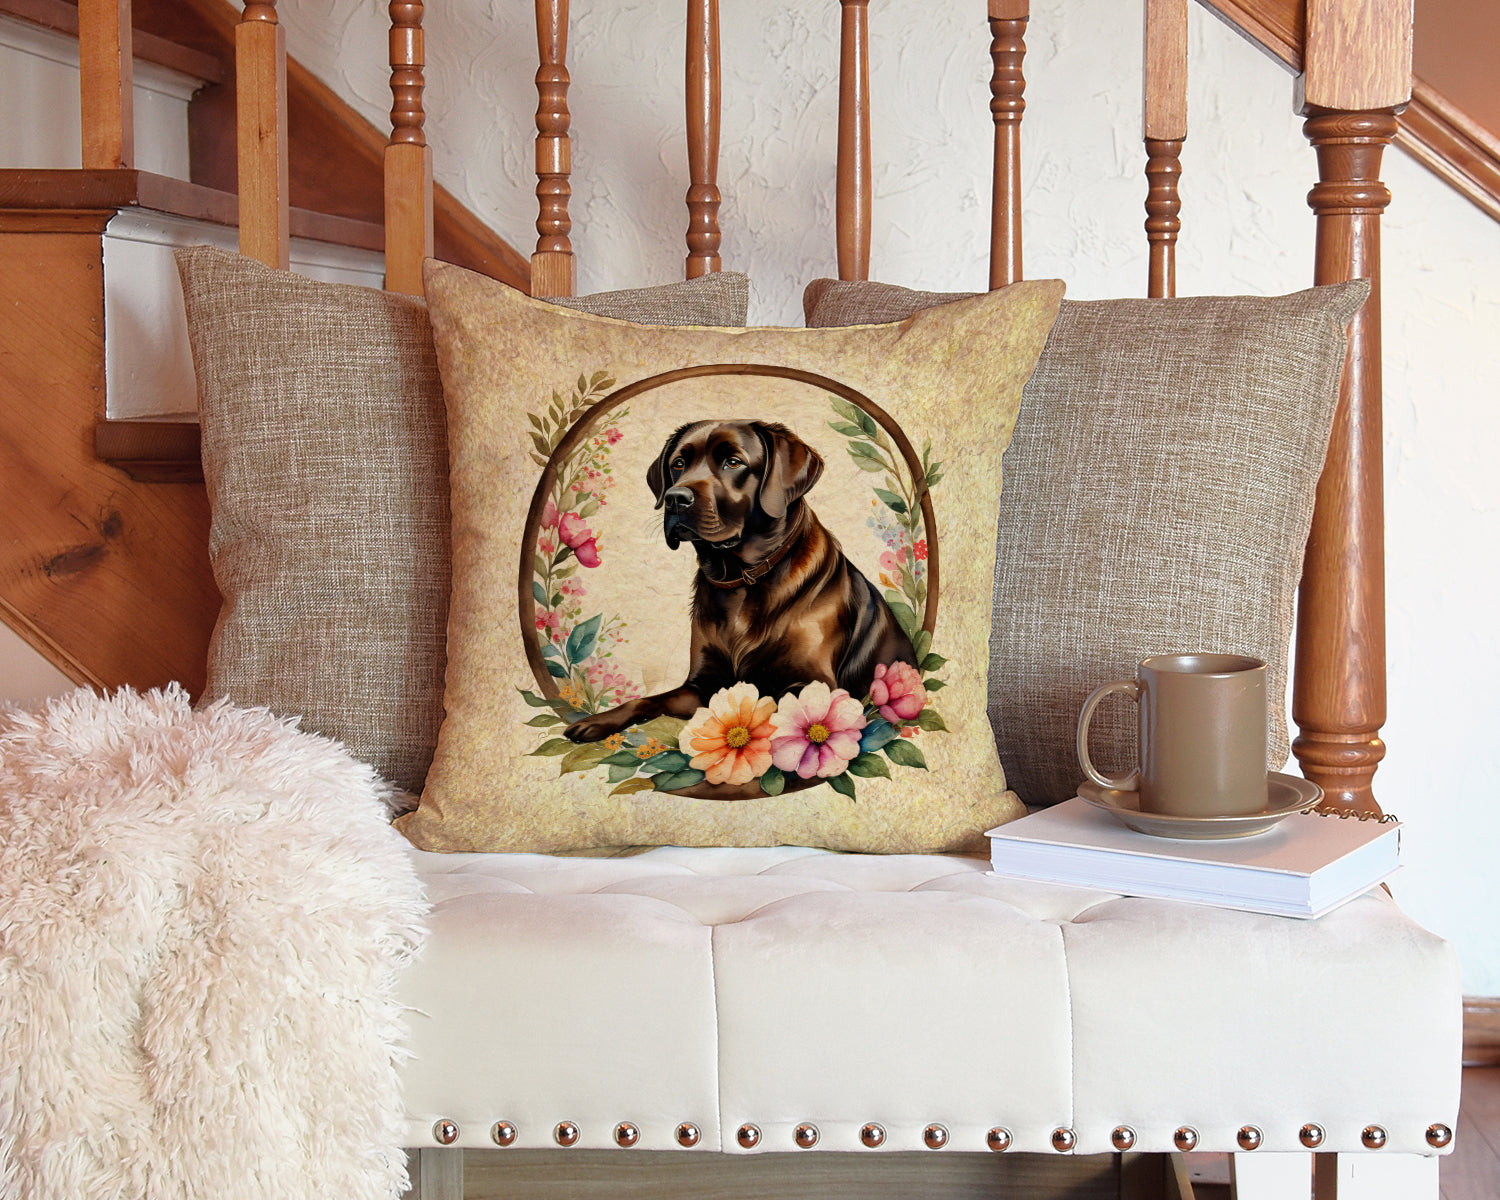 Chocolate Labrador Retriever and Flowers Fabric Decorative Pillow